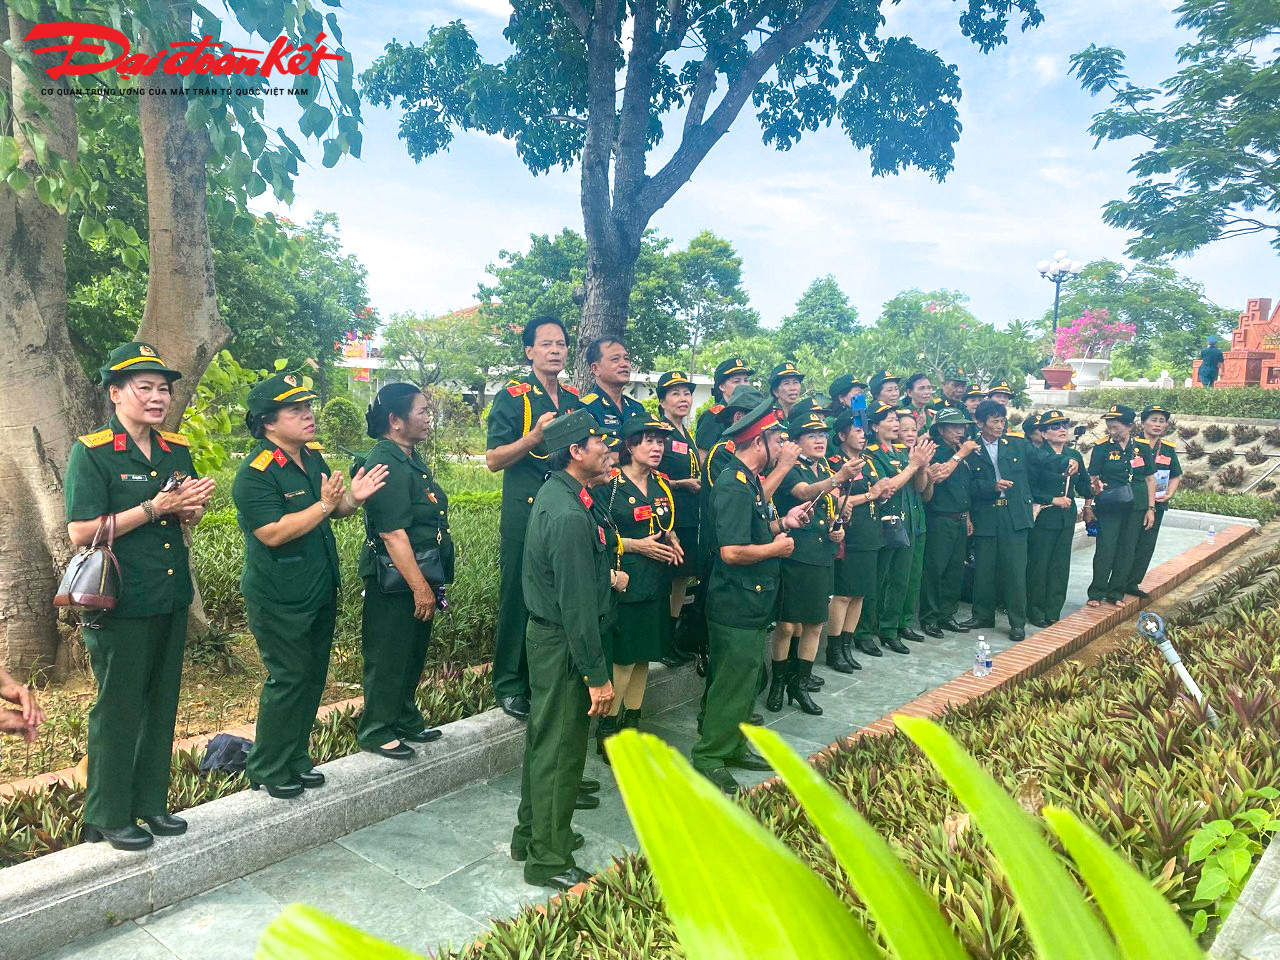 Cựu chiến binh thuộc Hội Chiến sĩ Thành cổ Quảng Trị năm 1972 tỉnh Lâm Đồng thực hiện chương trình “Hát cho đồng đội tôi nghe” để tưởng nhớ những đồng đội đã hy sinh trong sự nghiệp đấu tranh giành độc lập dân tộc, thống nhất đất nước.